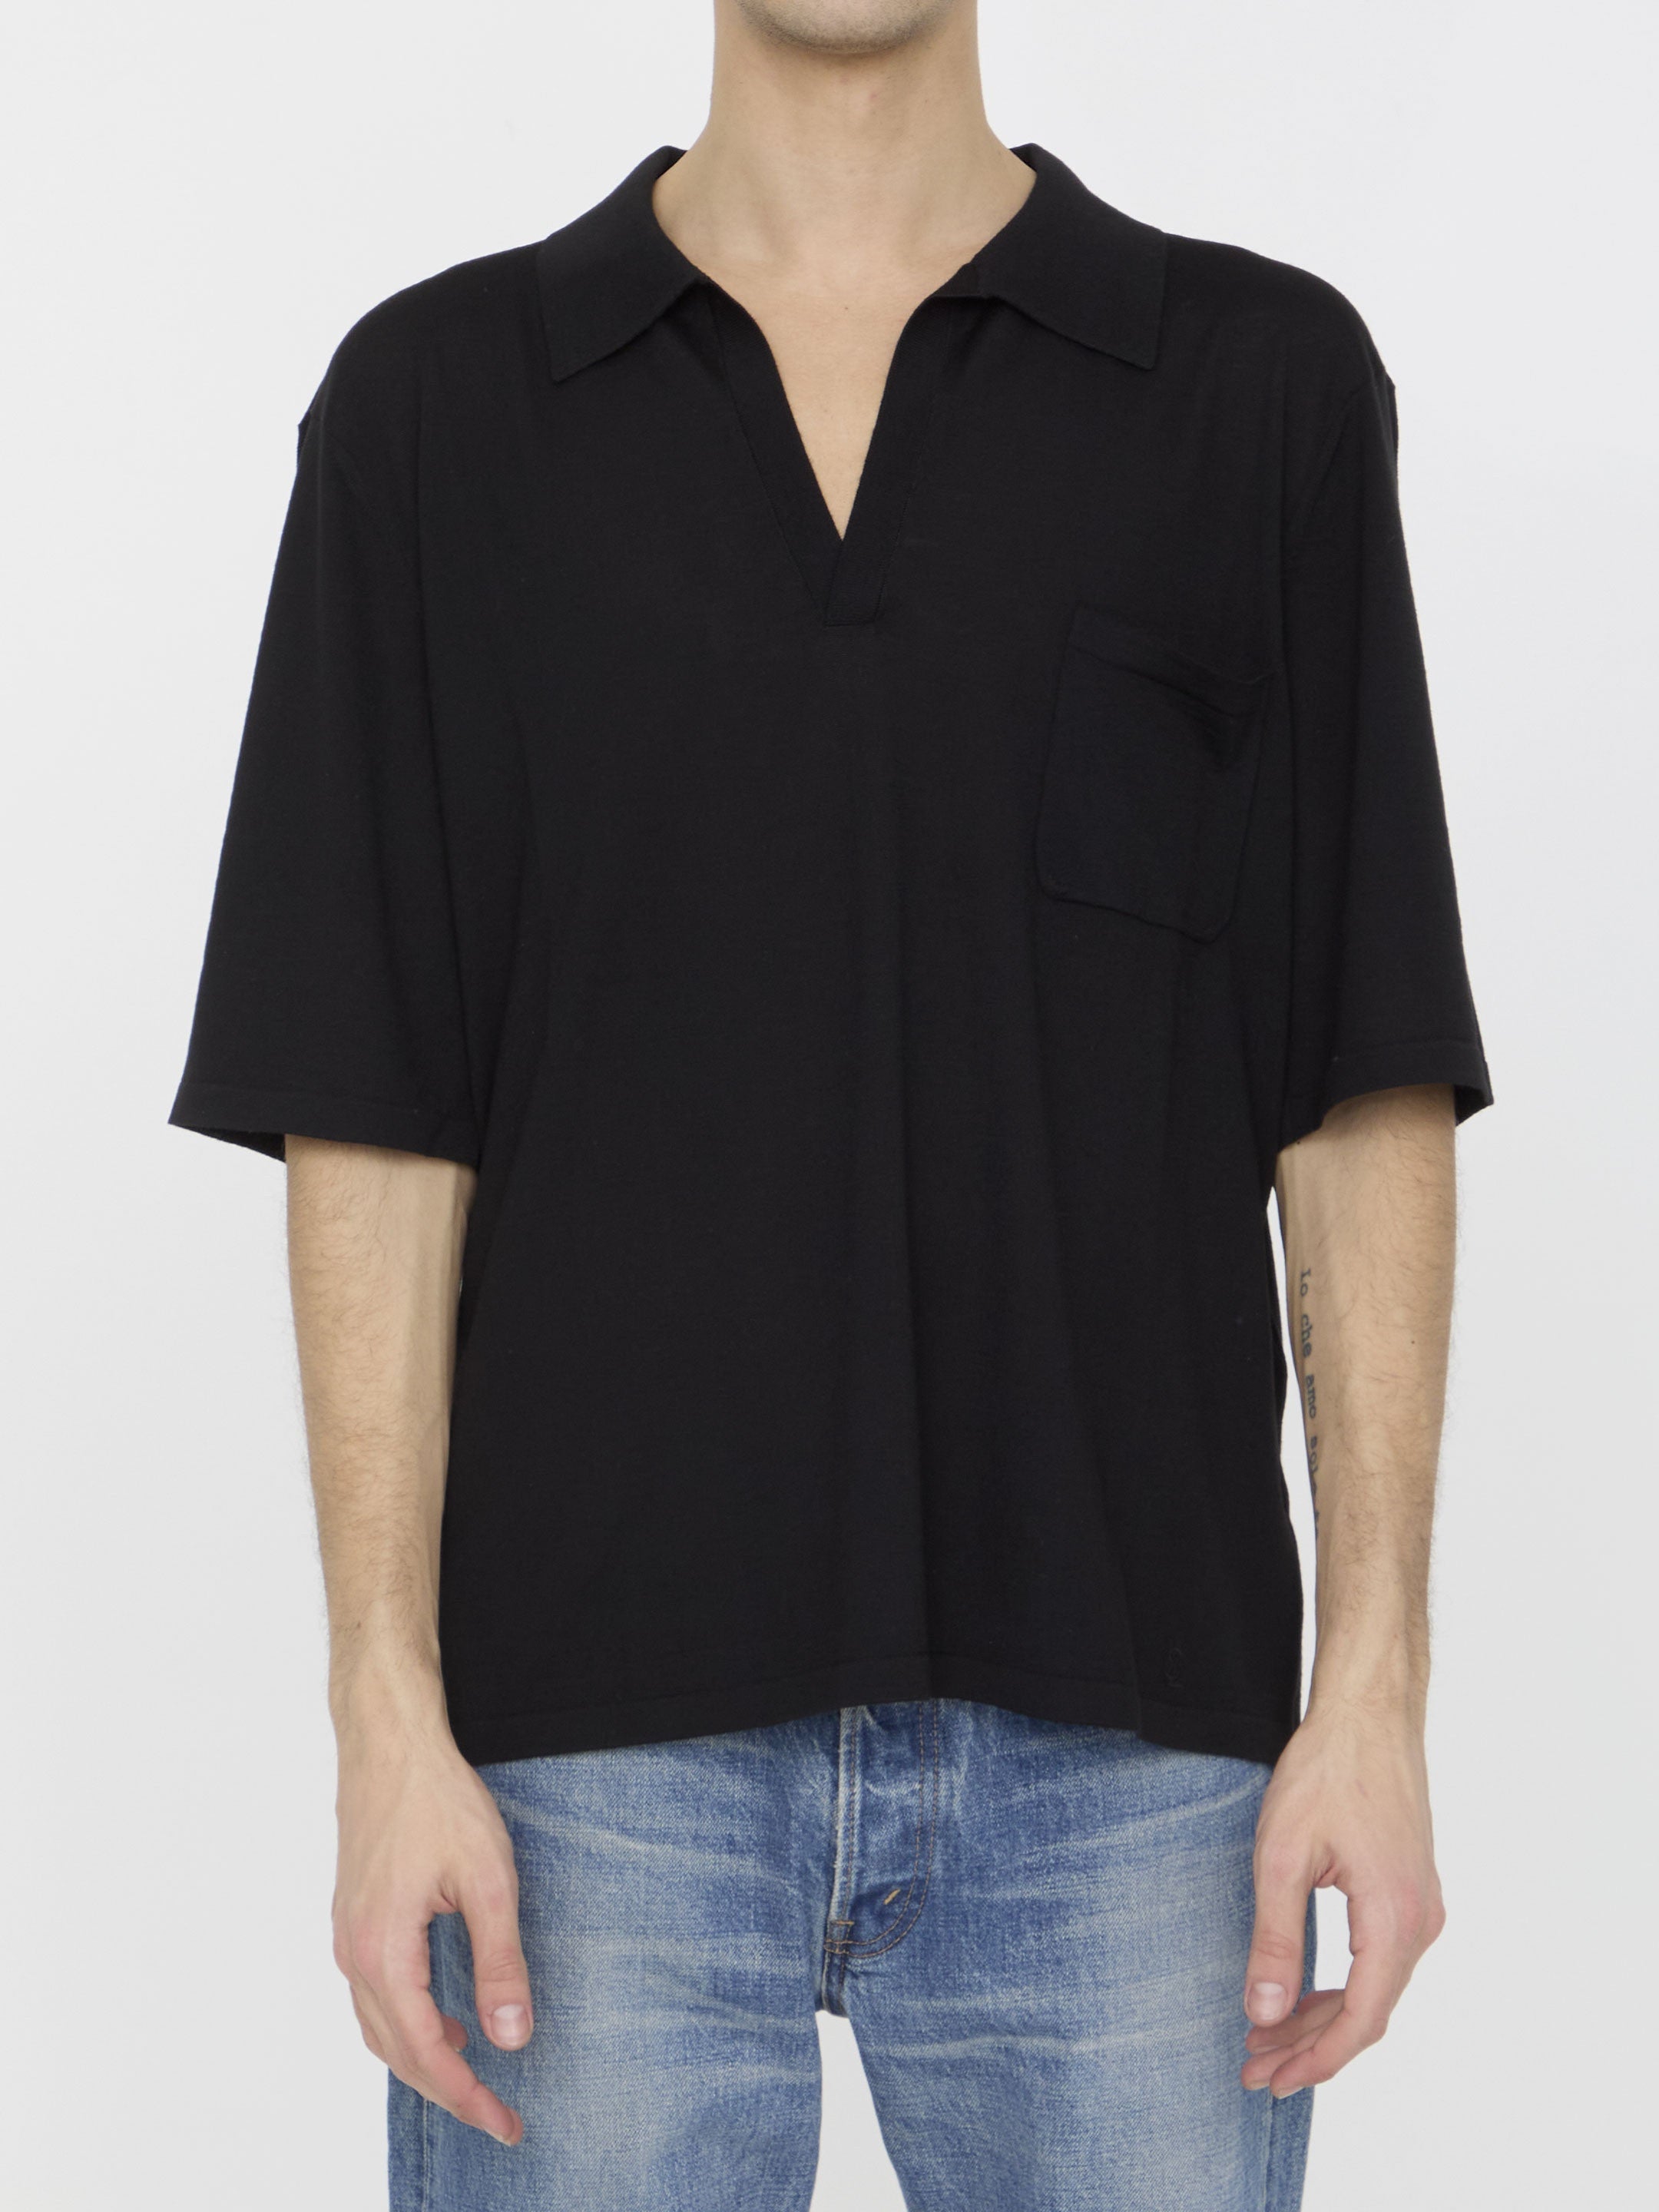 SAINT-LAURENT-OUTLET-SALE-Cassandre-polo-shirt-Shirts-L-BLACK-ARCHIVE-COLLECTION.jpg